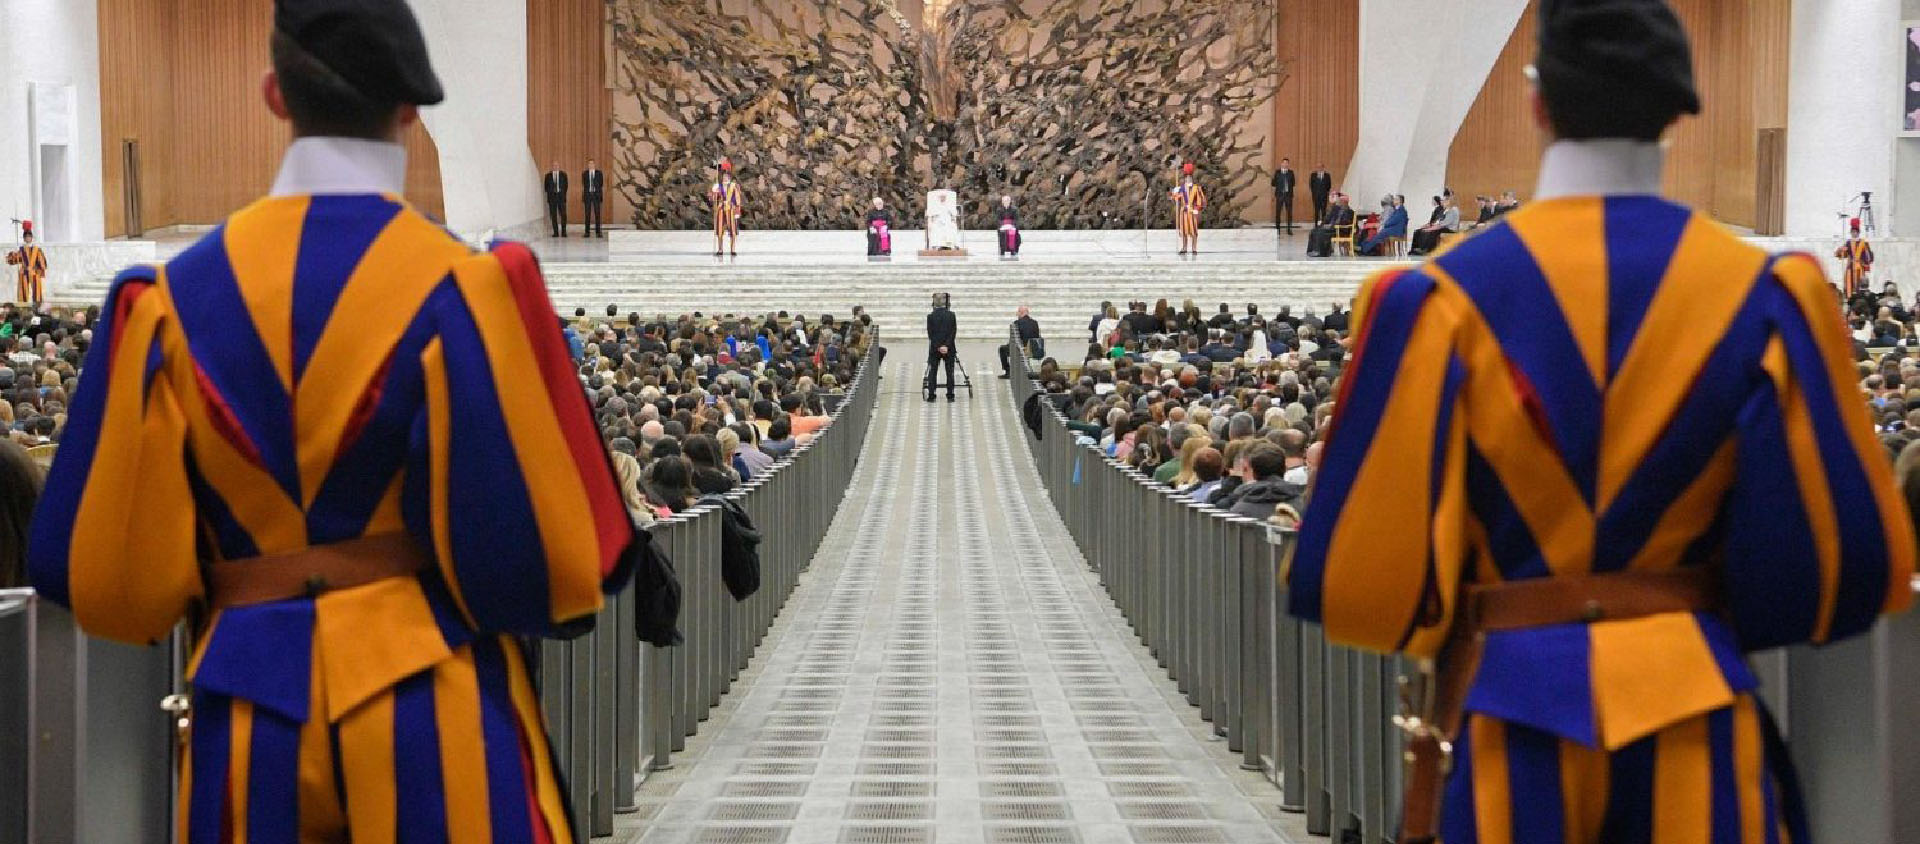 Les 370 membres du synode se retrouveront dans la salle Paul VI | © Vatican Media